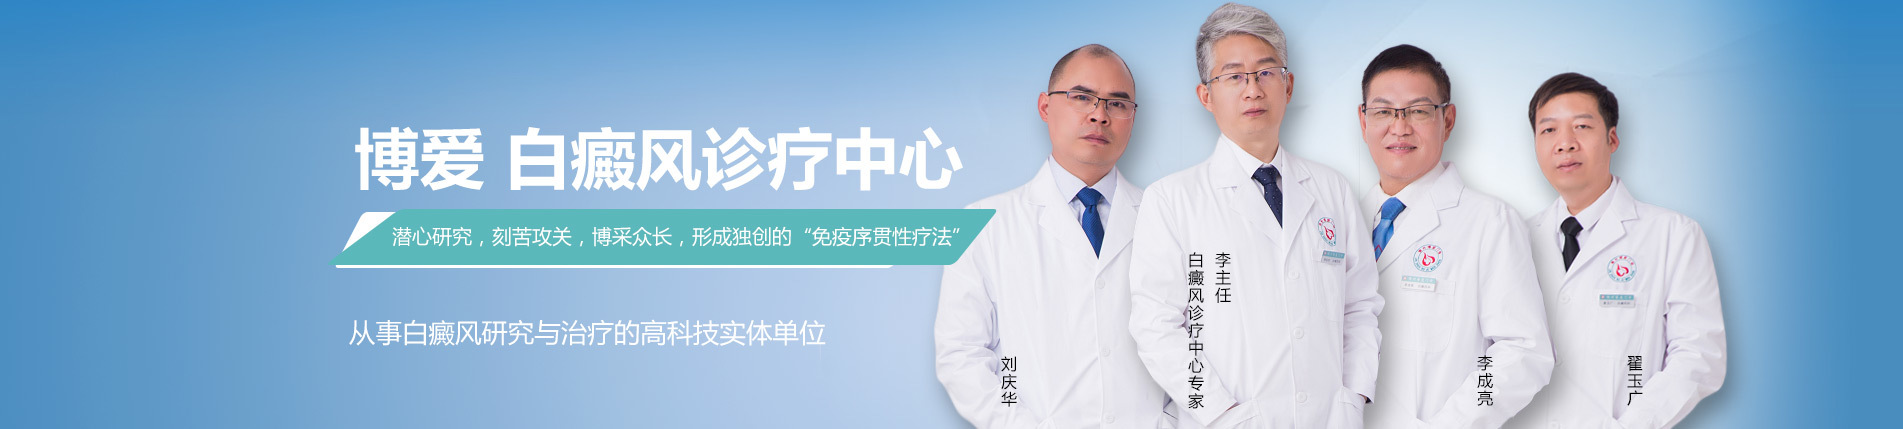 博爱uedbet赫塔菲官网app诊疗中心